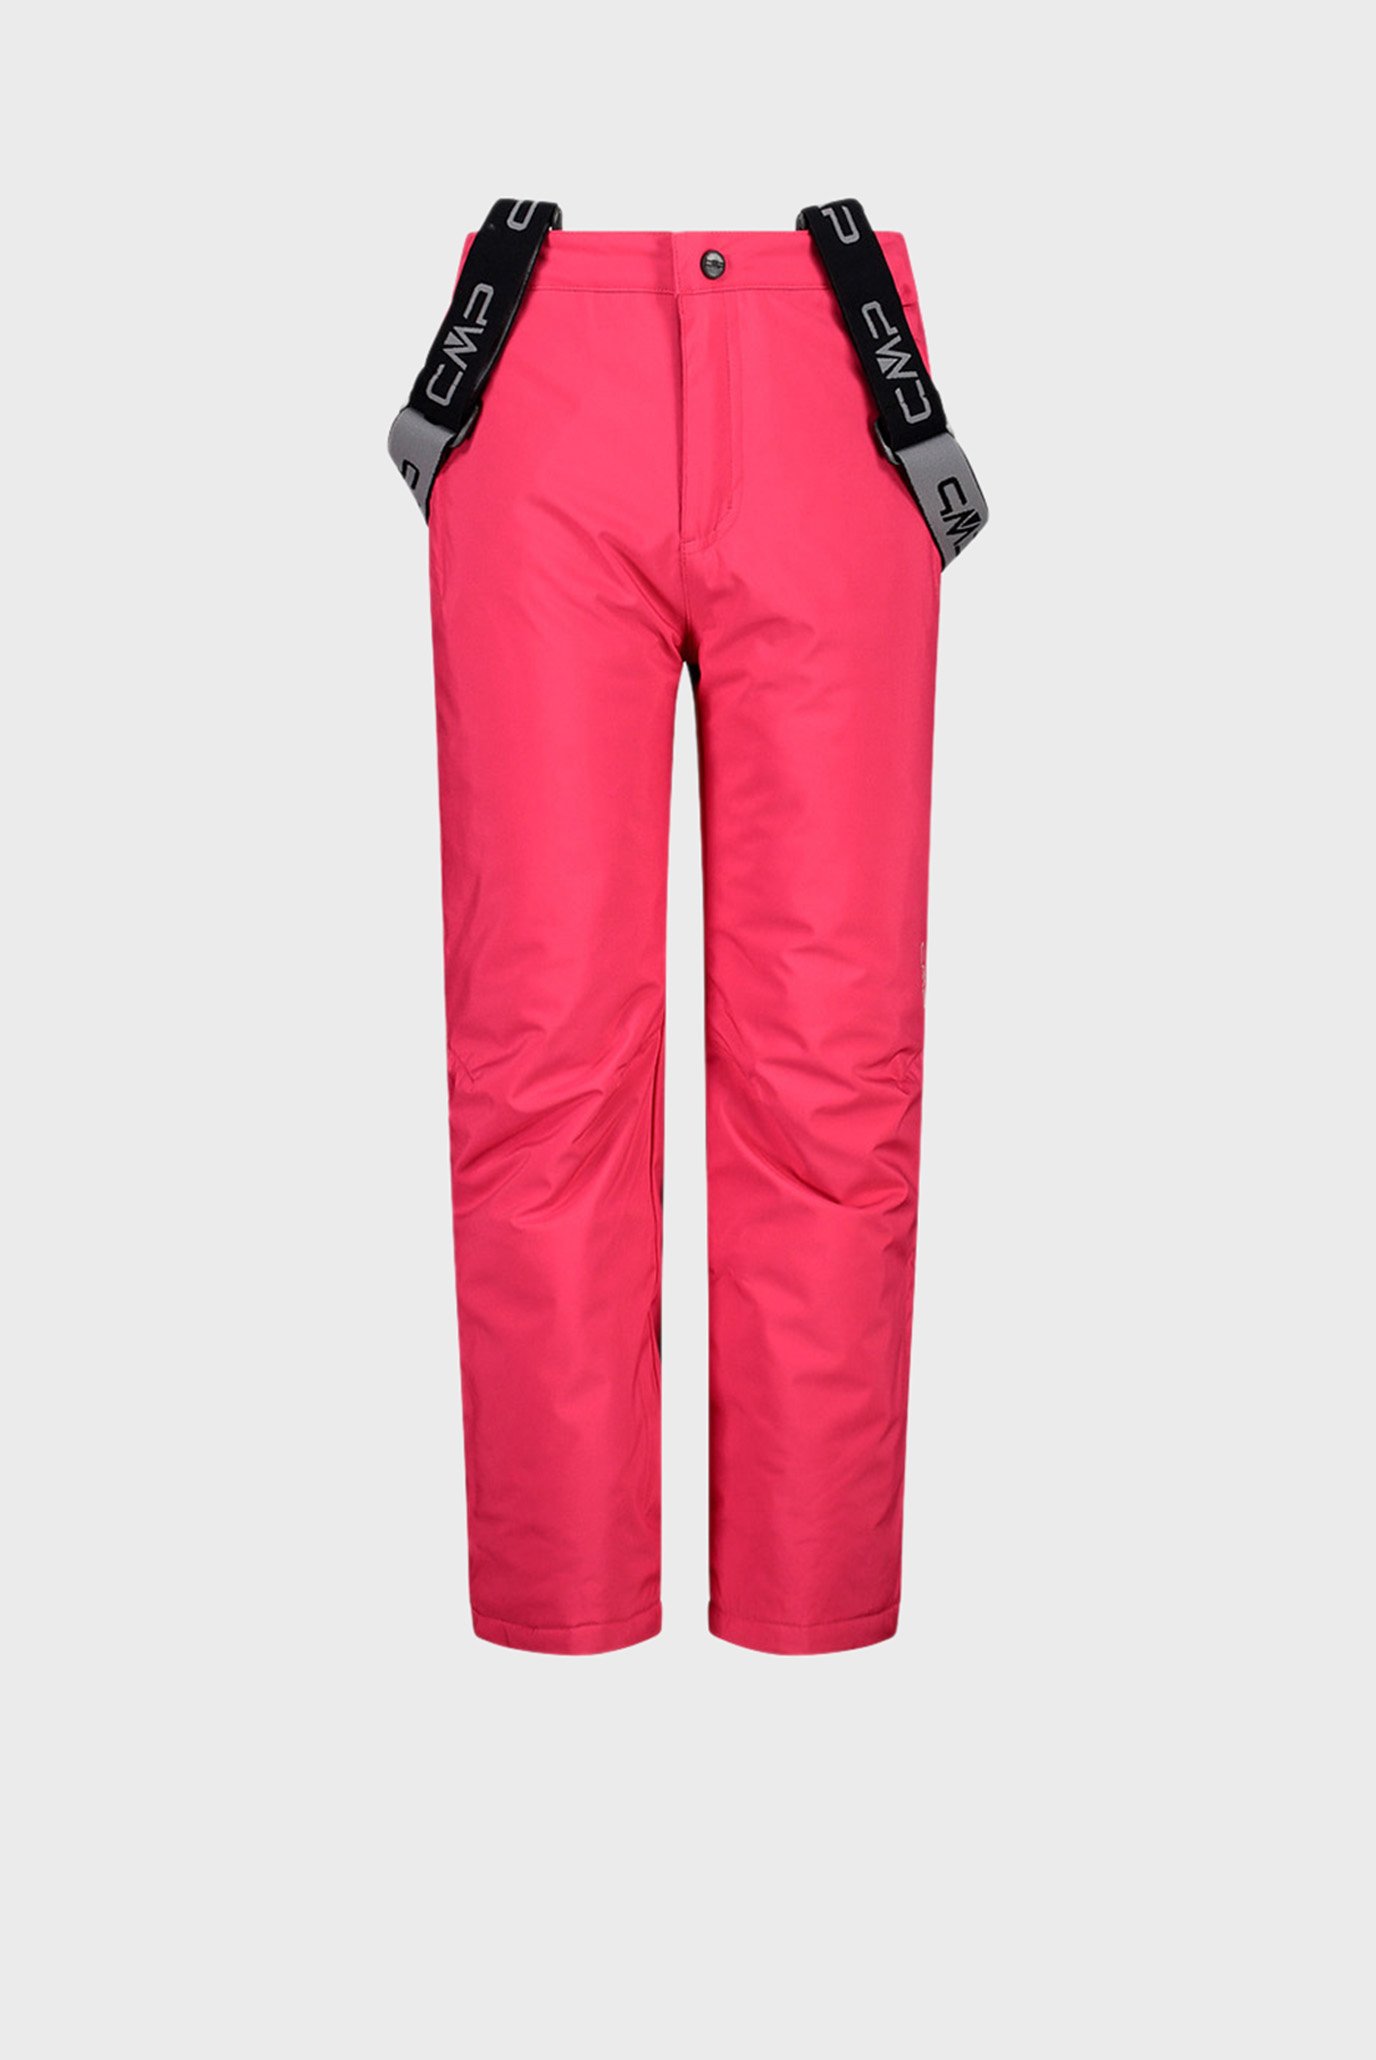 Дитячі рожеві лижні штани KID SALOPETTE 1